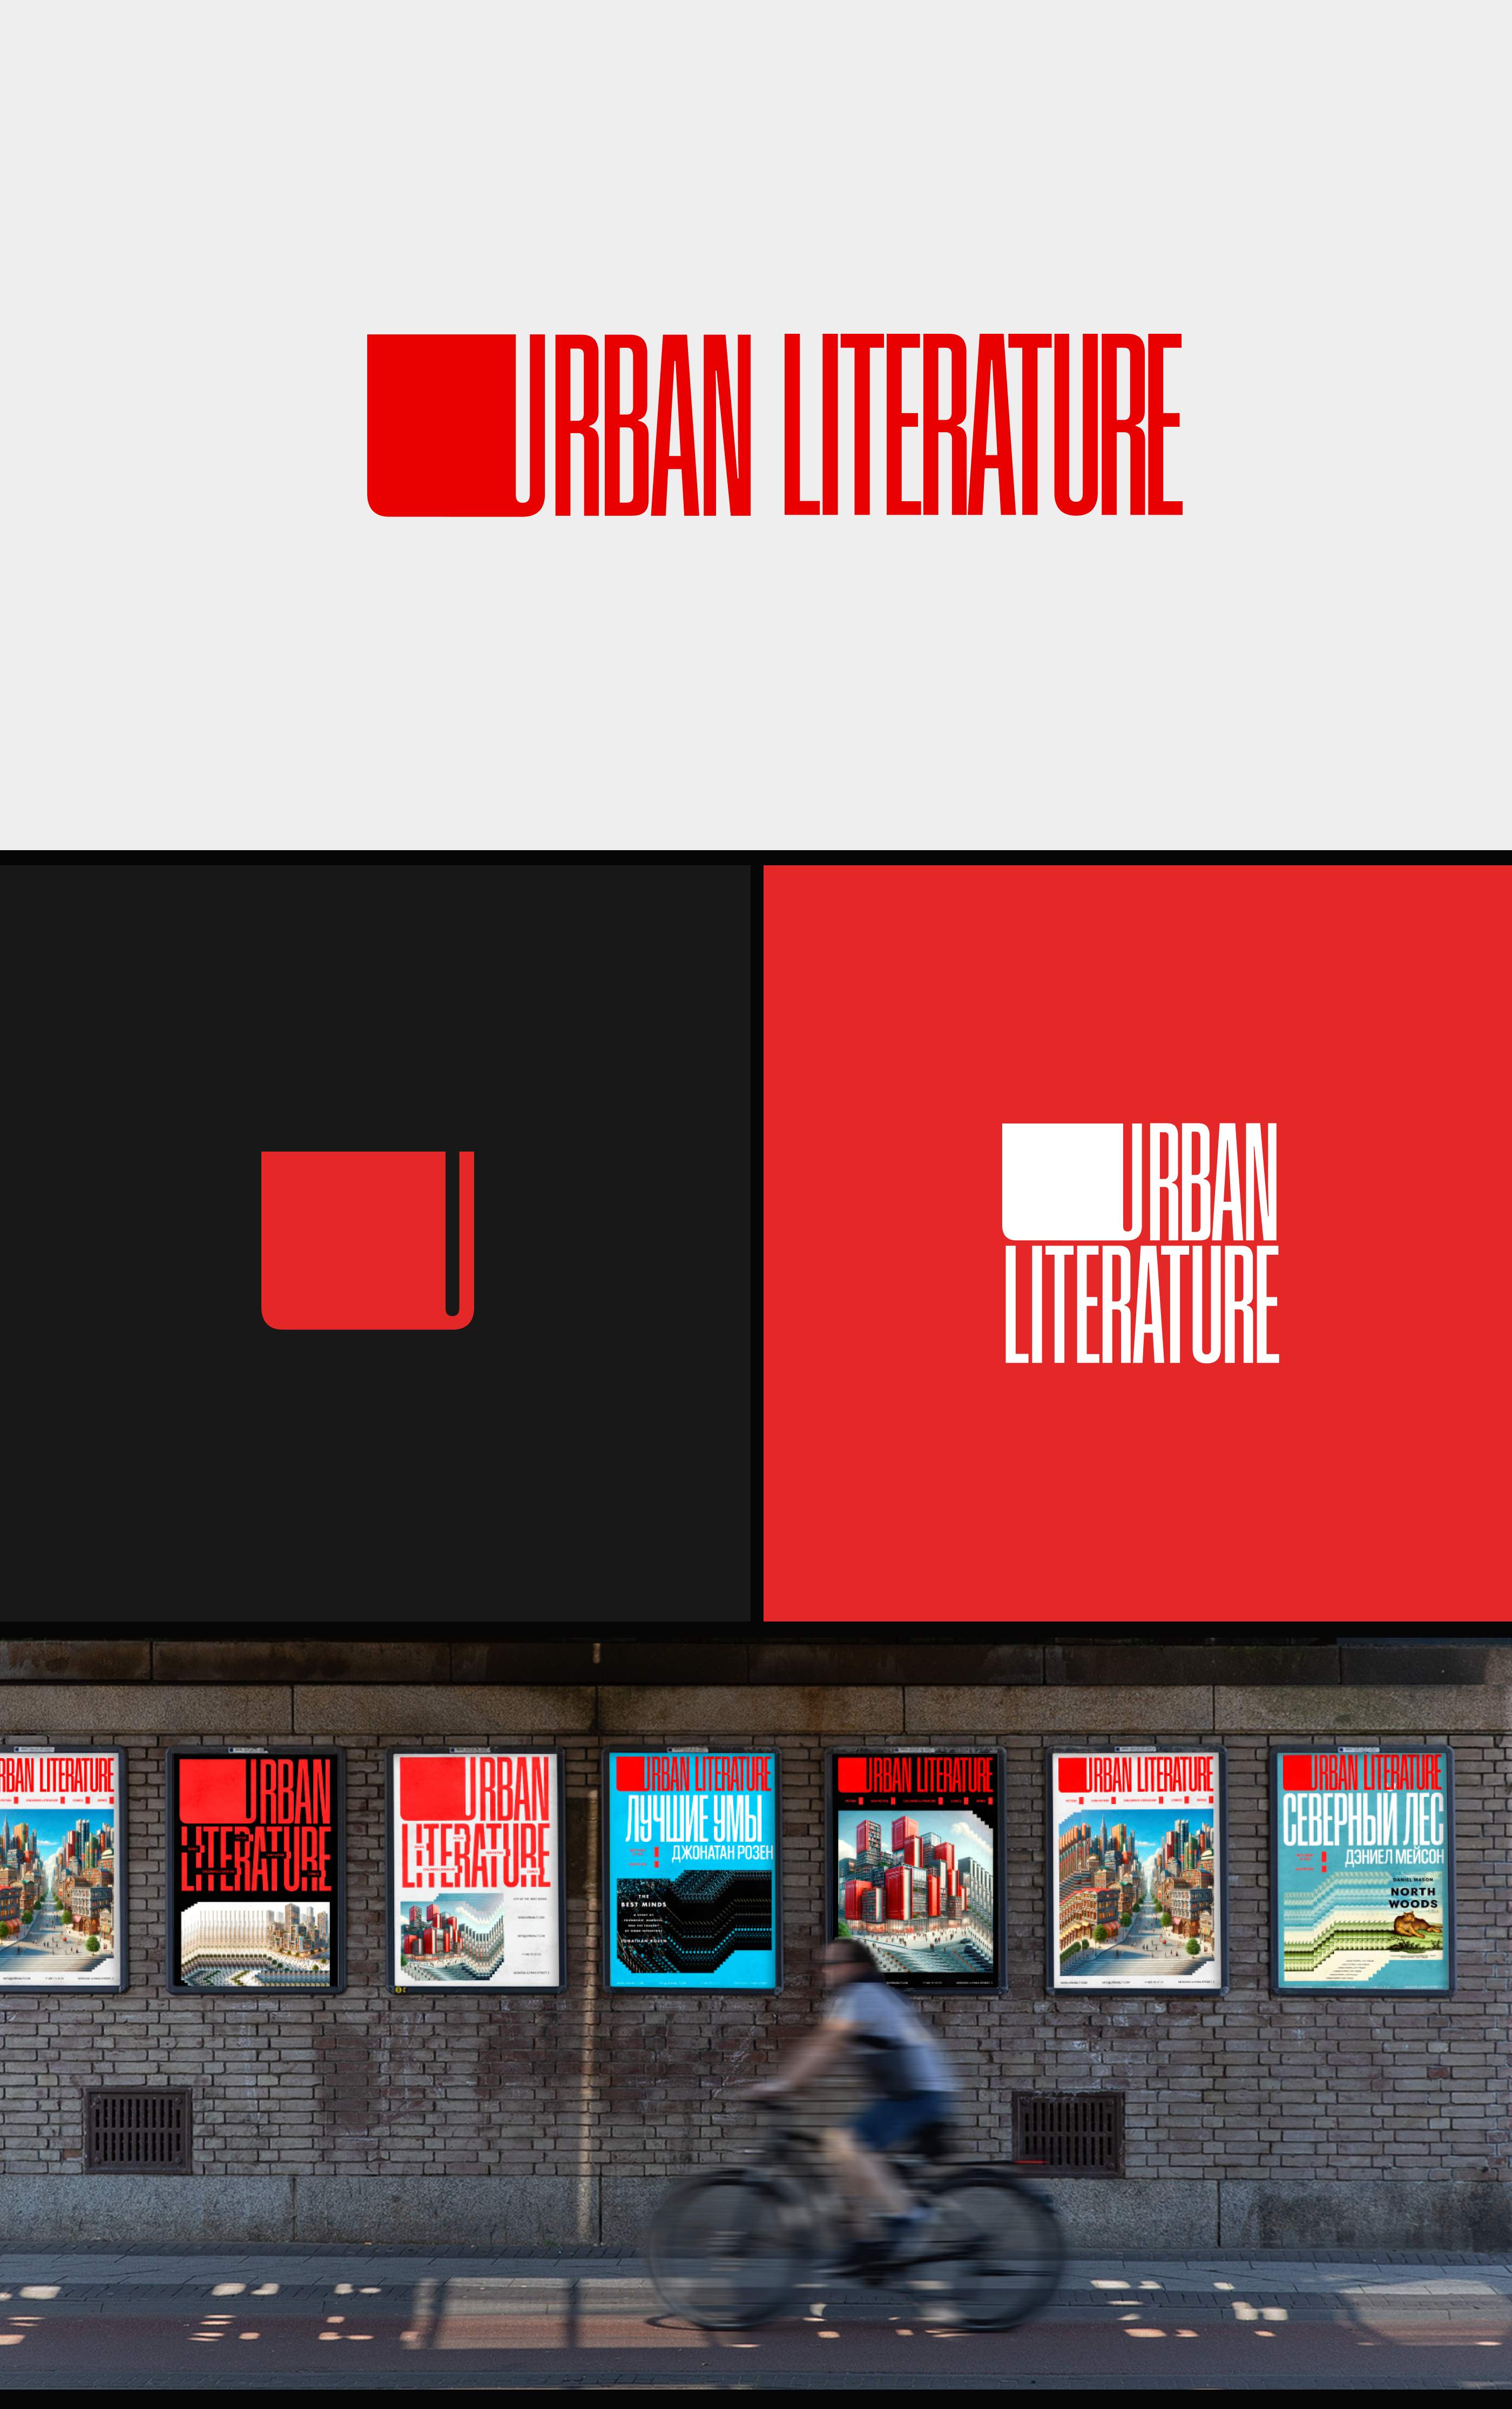 Urban Literature — Изображение №4 — Интерфейсы, Брендинг на Dprofile